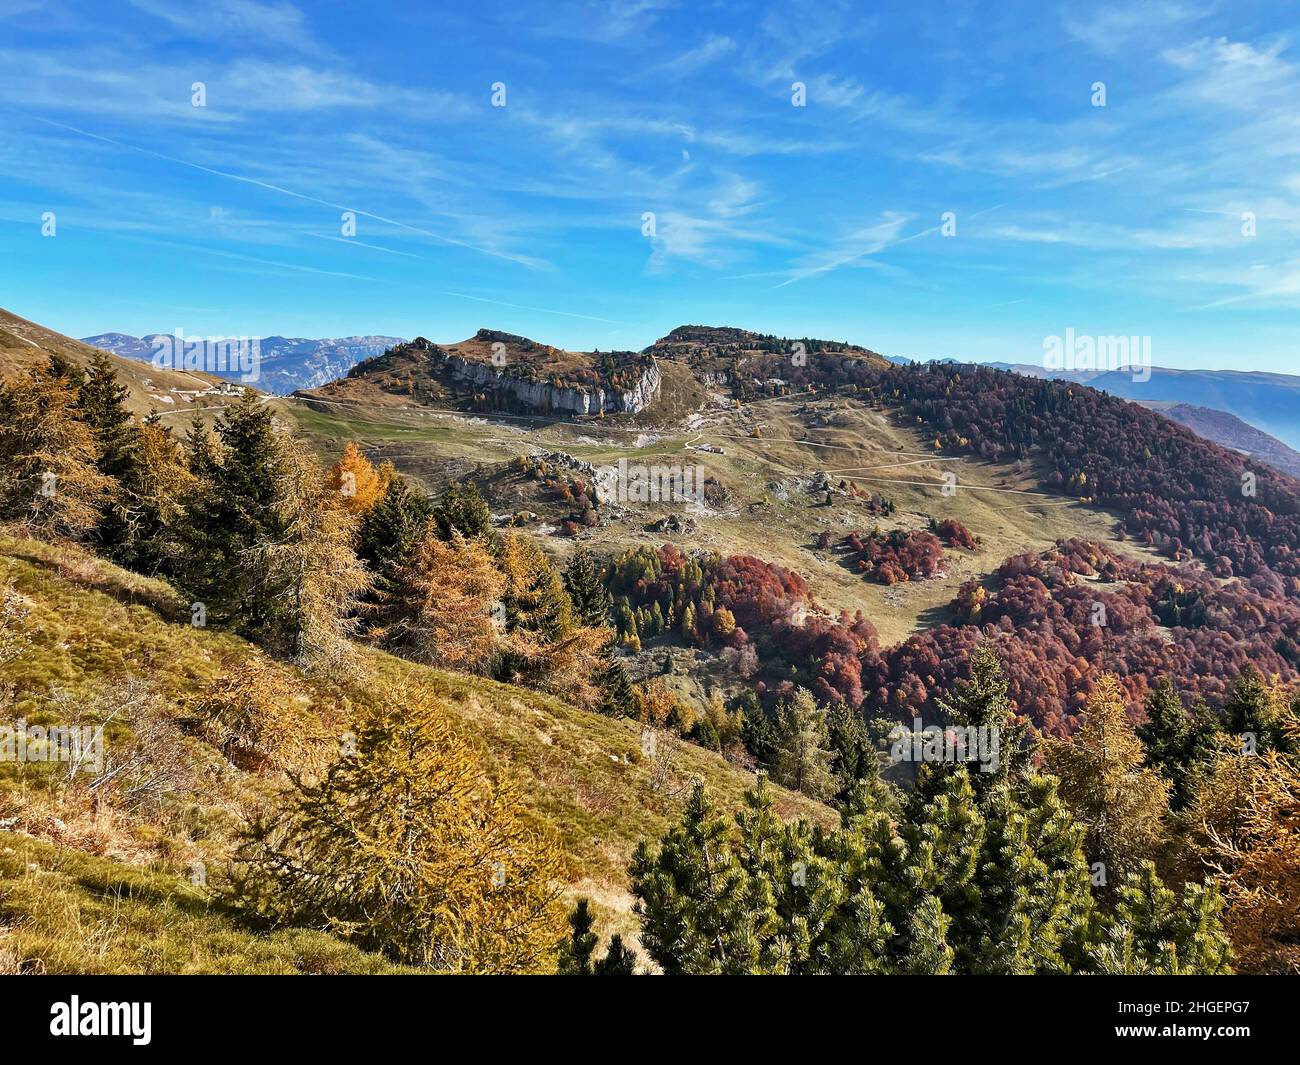 Sentieri Malga sulle colline di Trento, Trentino alto adige, Italia Foto Stock